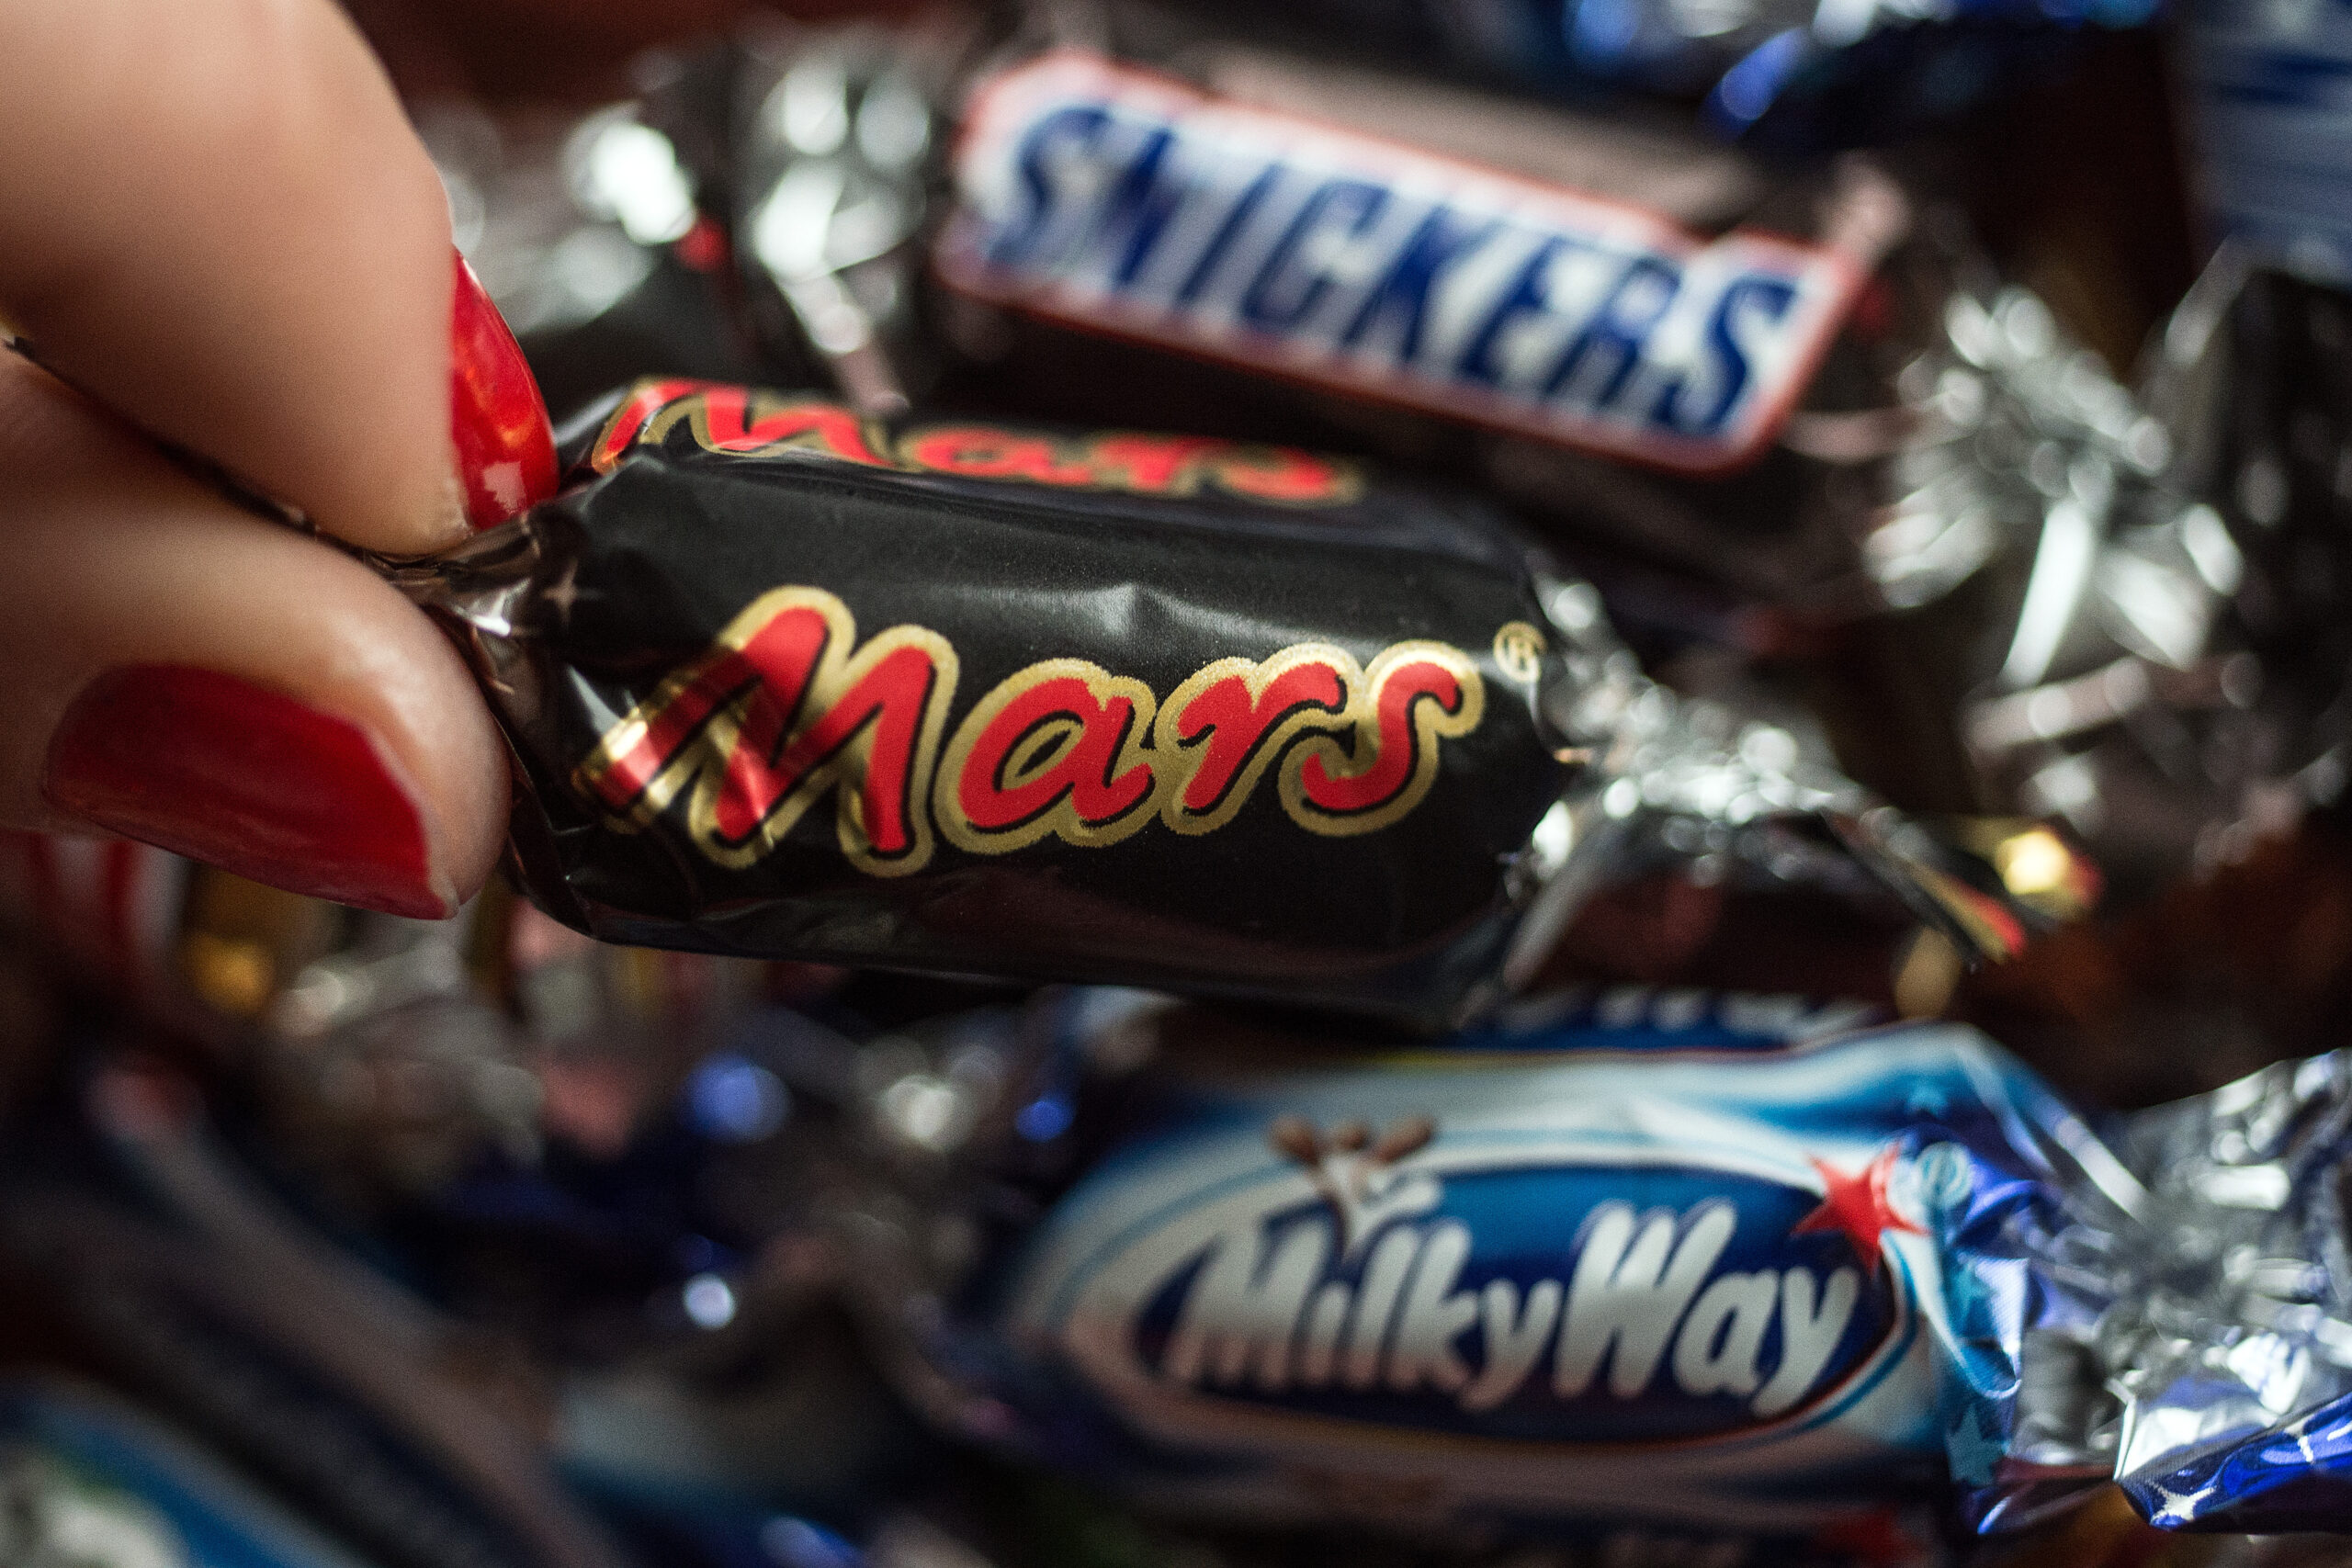 Der Mars-Konzern liefert seine Produkte nicht mehr an Edeka und Rewe.